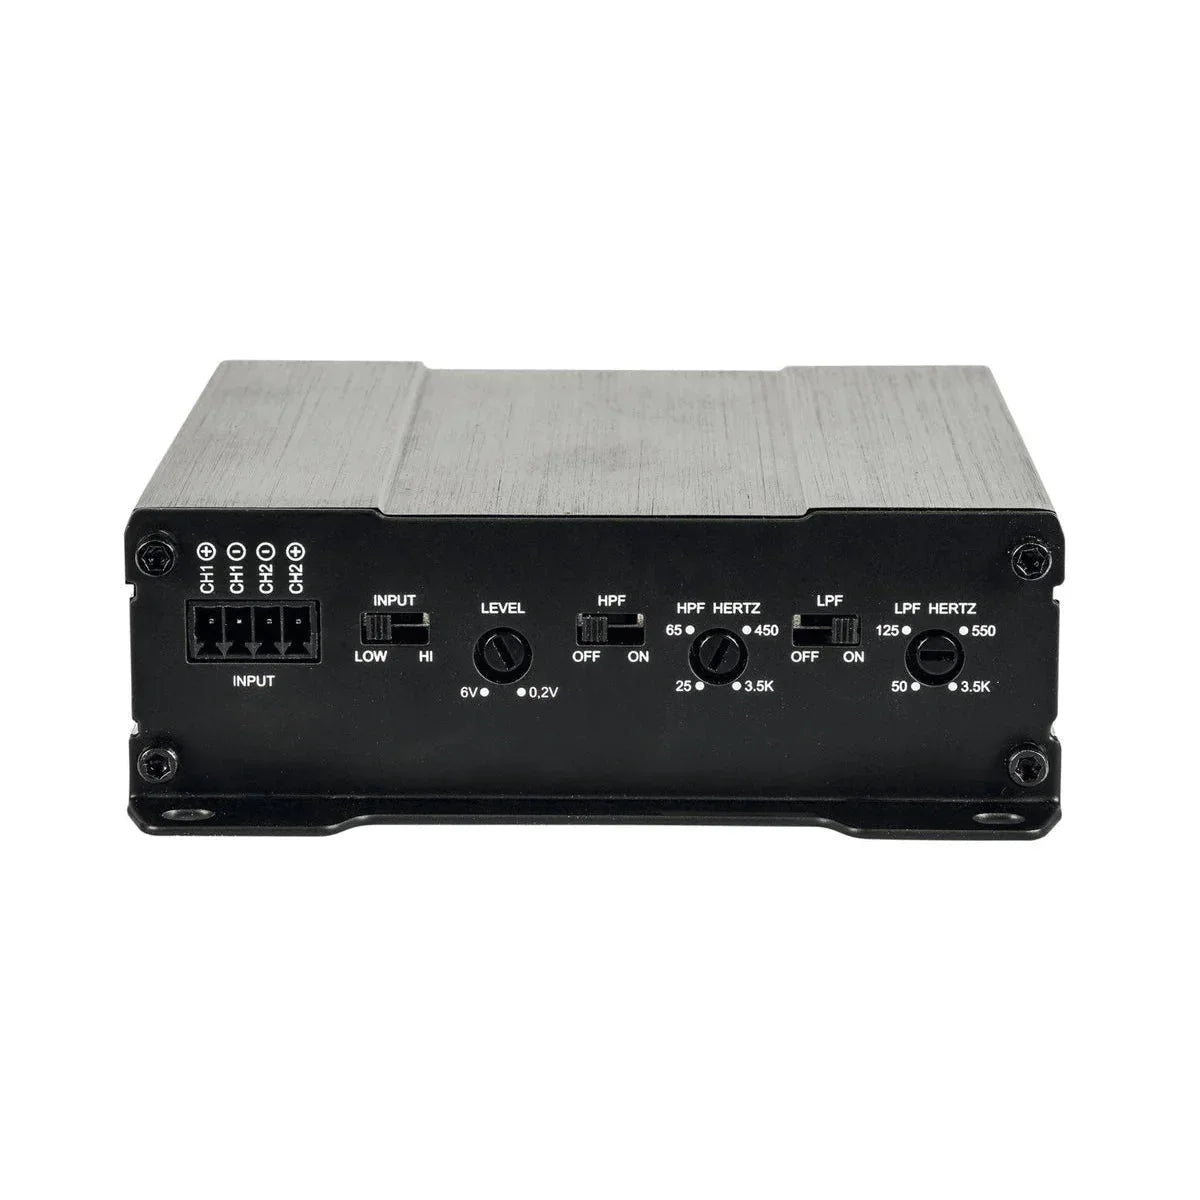 Audio System-M-300.1 MD-1-Kanal Verstärker-Masori.de